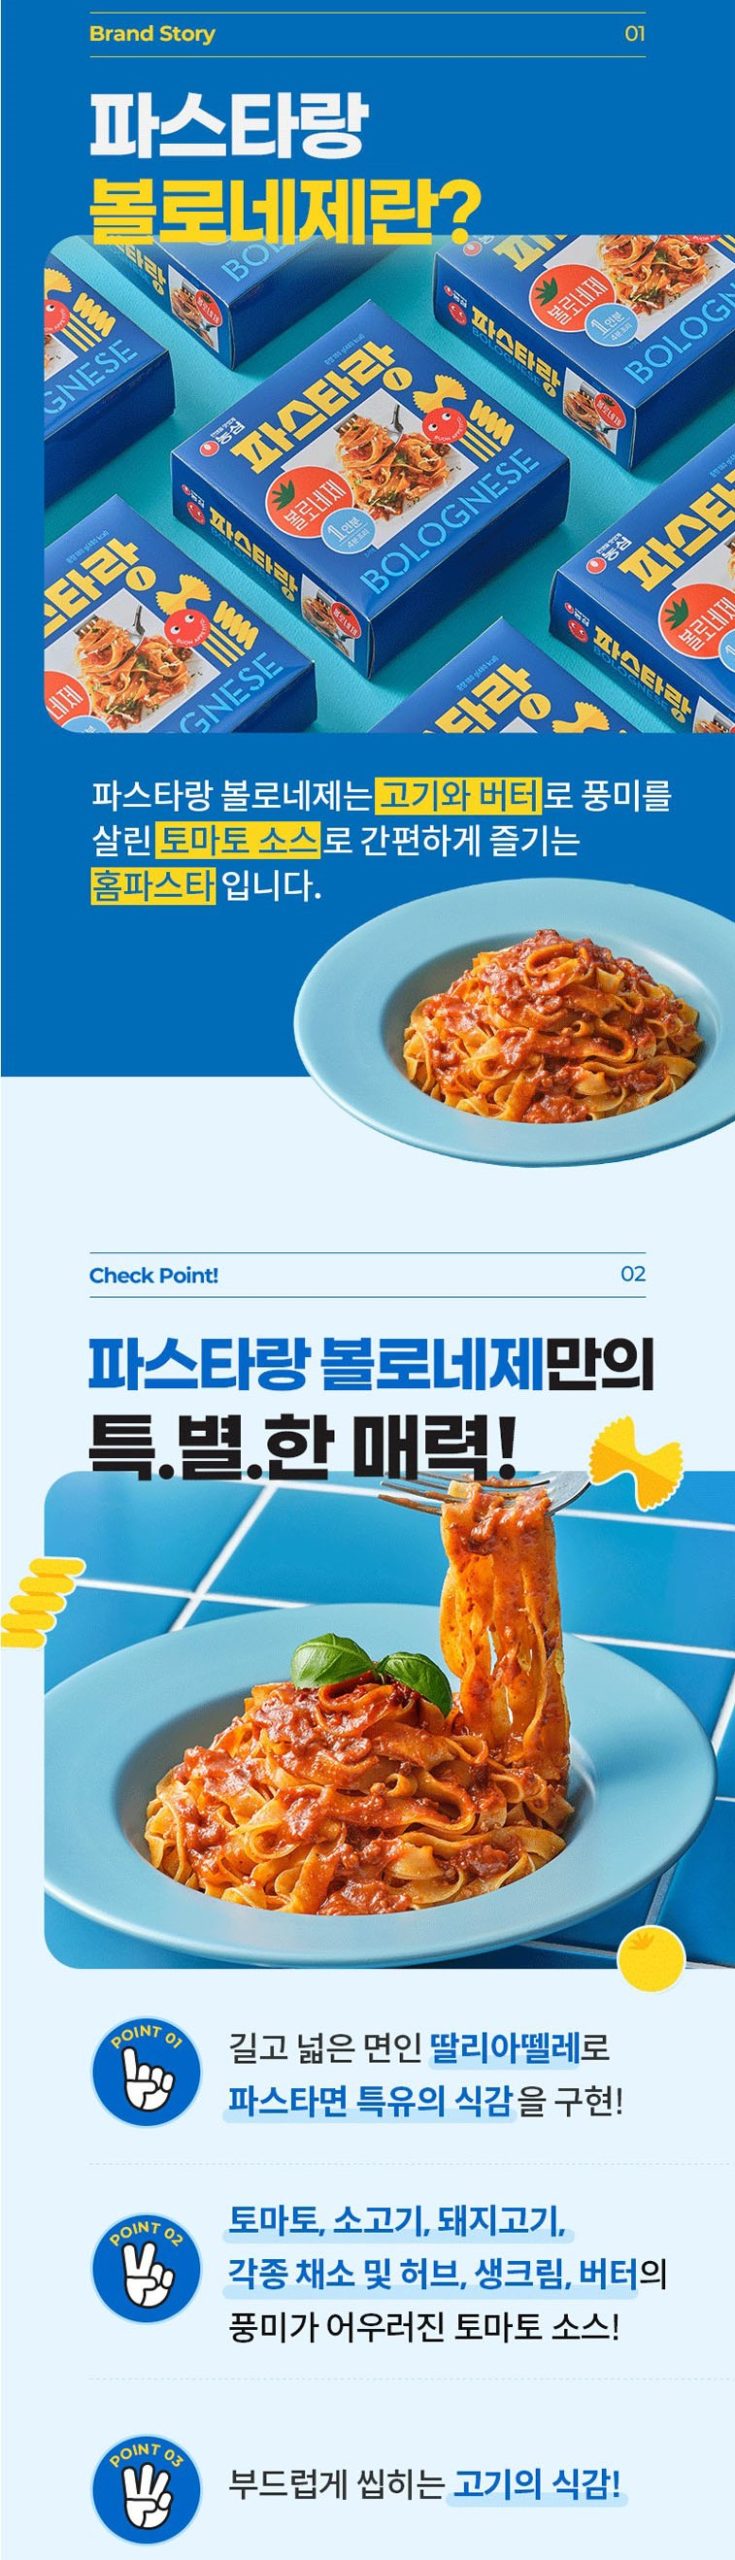 韓國食品-[농심] 파스타랑 (볼로네제) 180g